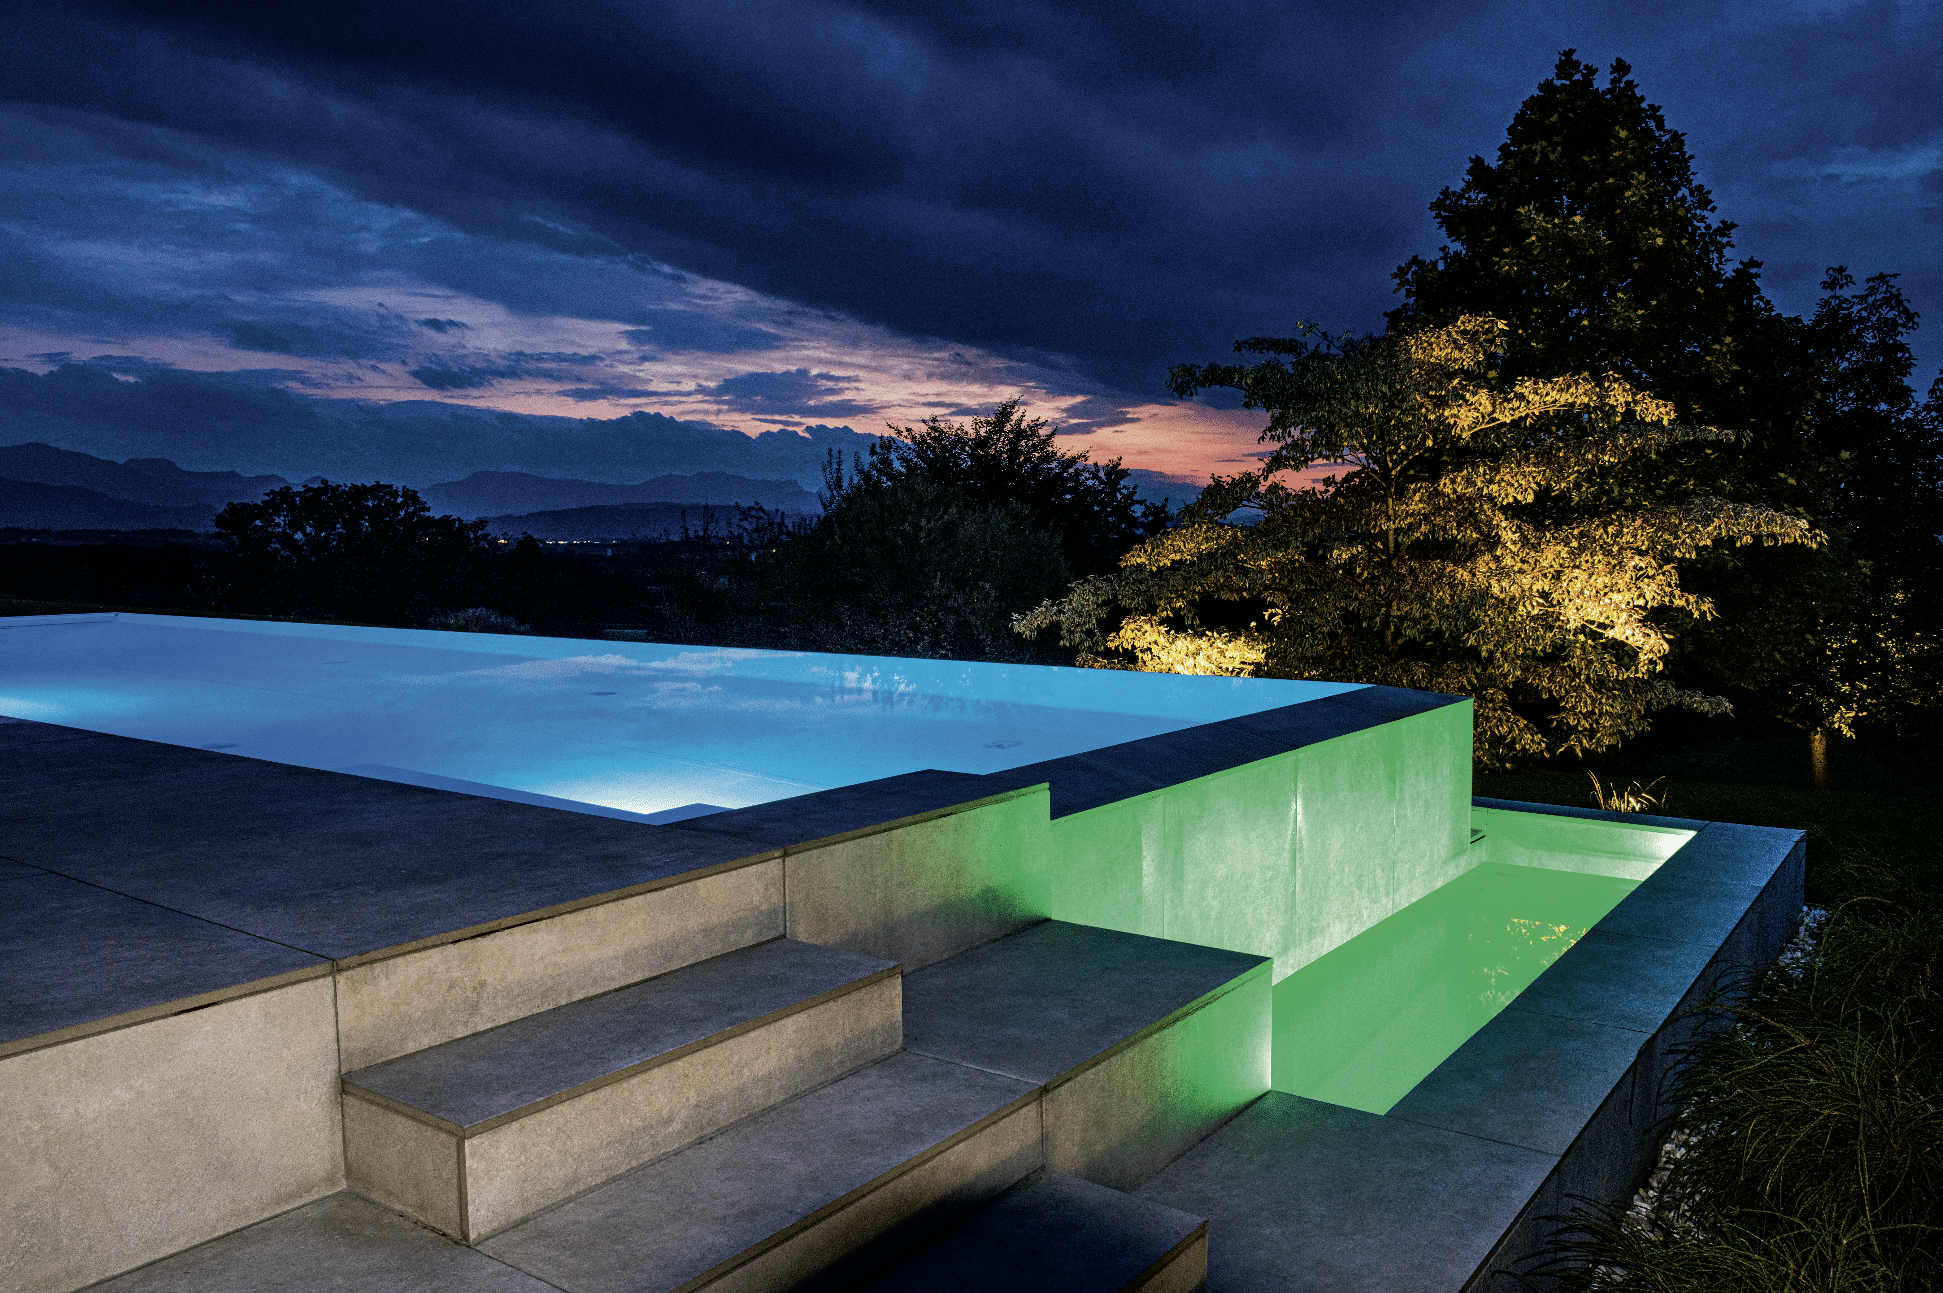 SAUNA-SCHWIMMBAD RUHA Stelzmüller zeigt einen Swimmingpool mit Überlauf bei Nacht mit farbenfroher Beleuchtung.